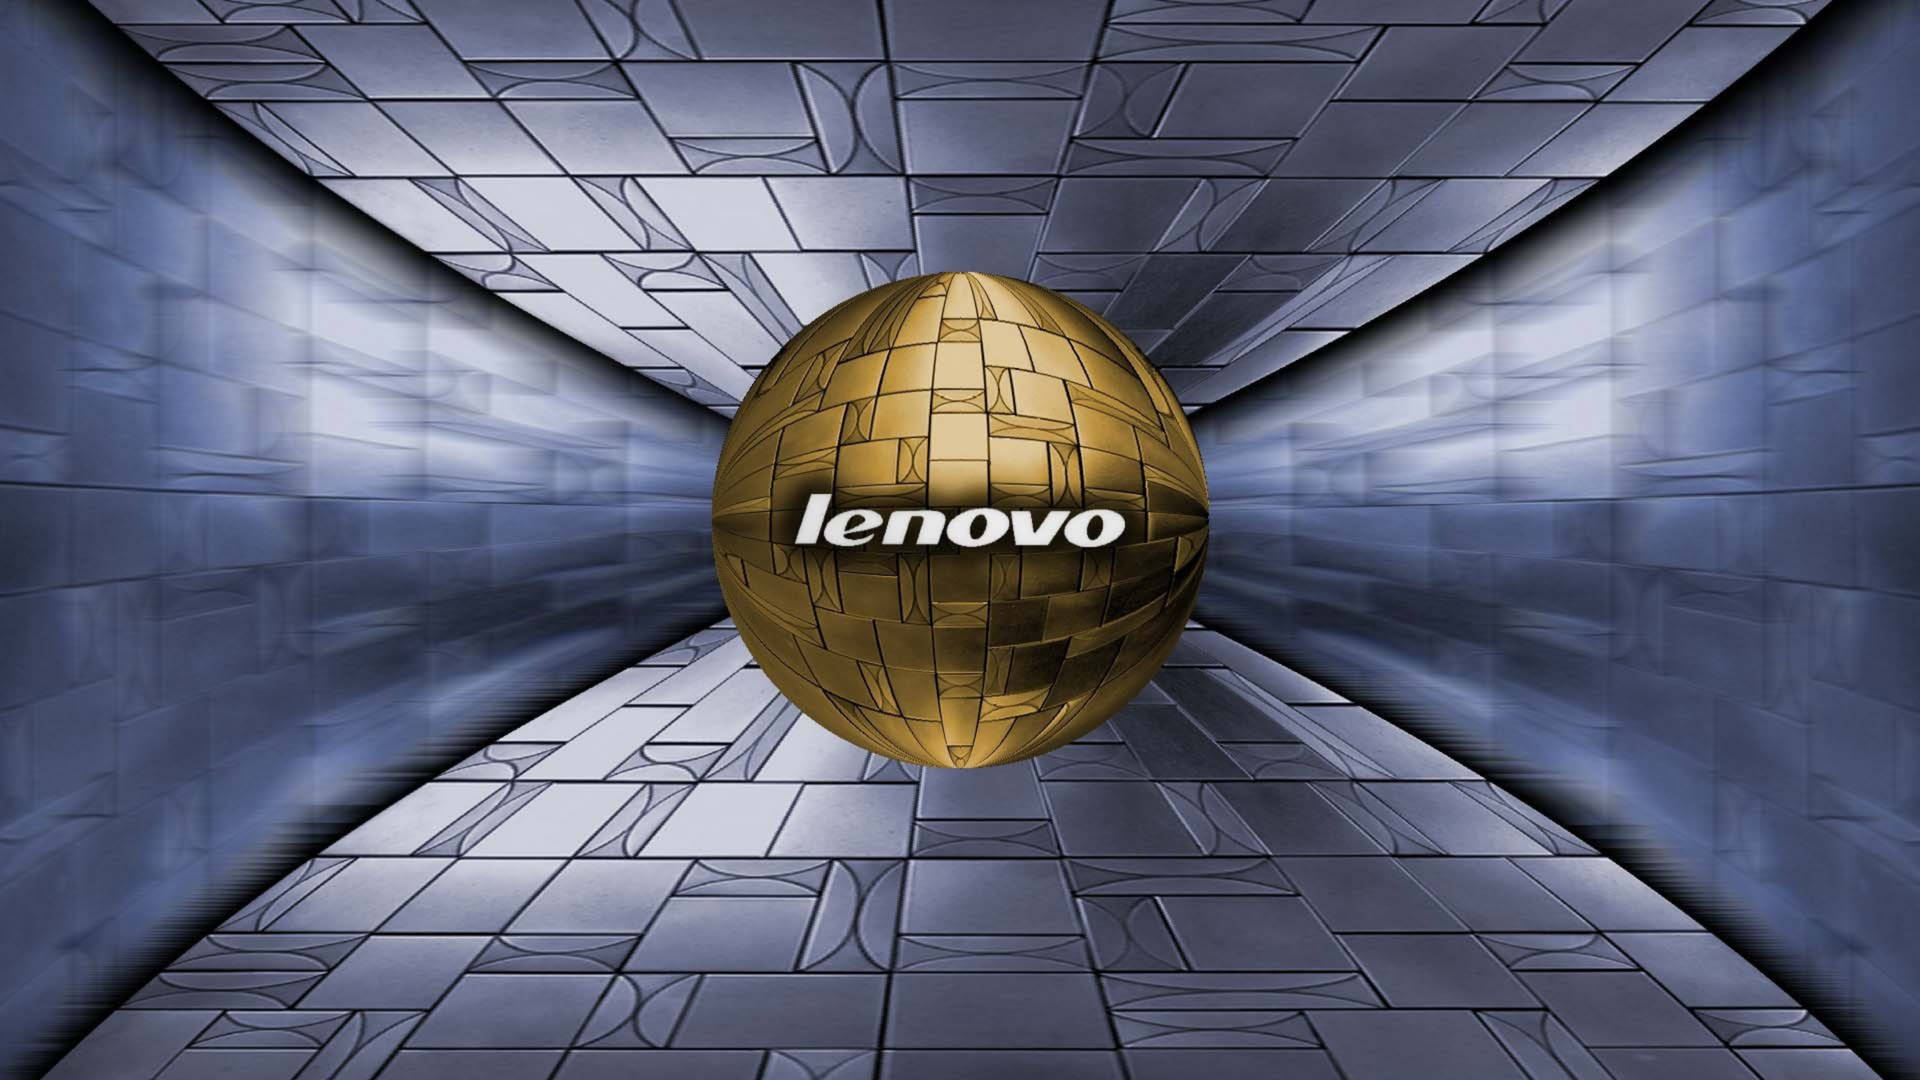 Lenovo Official Tiled Golden Ball Wallpaper